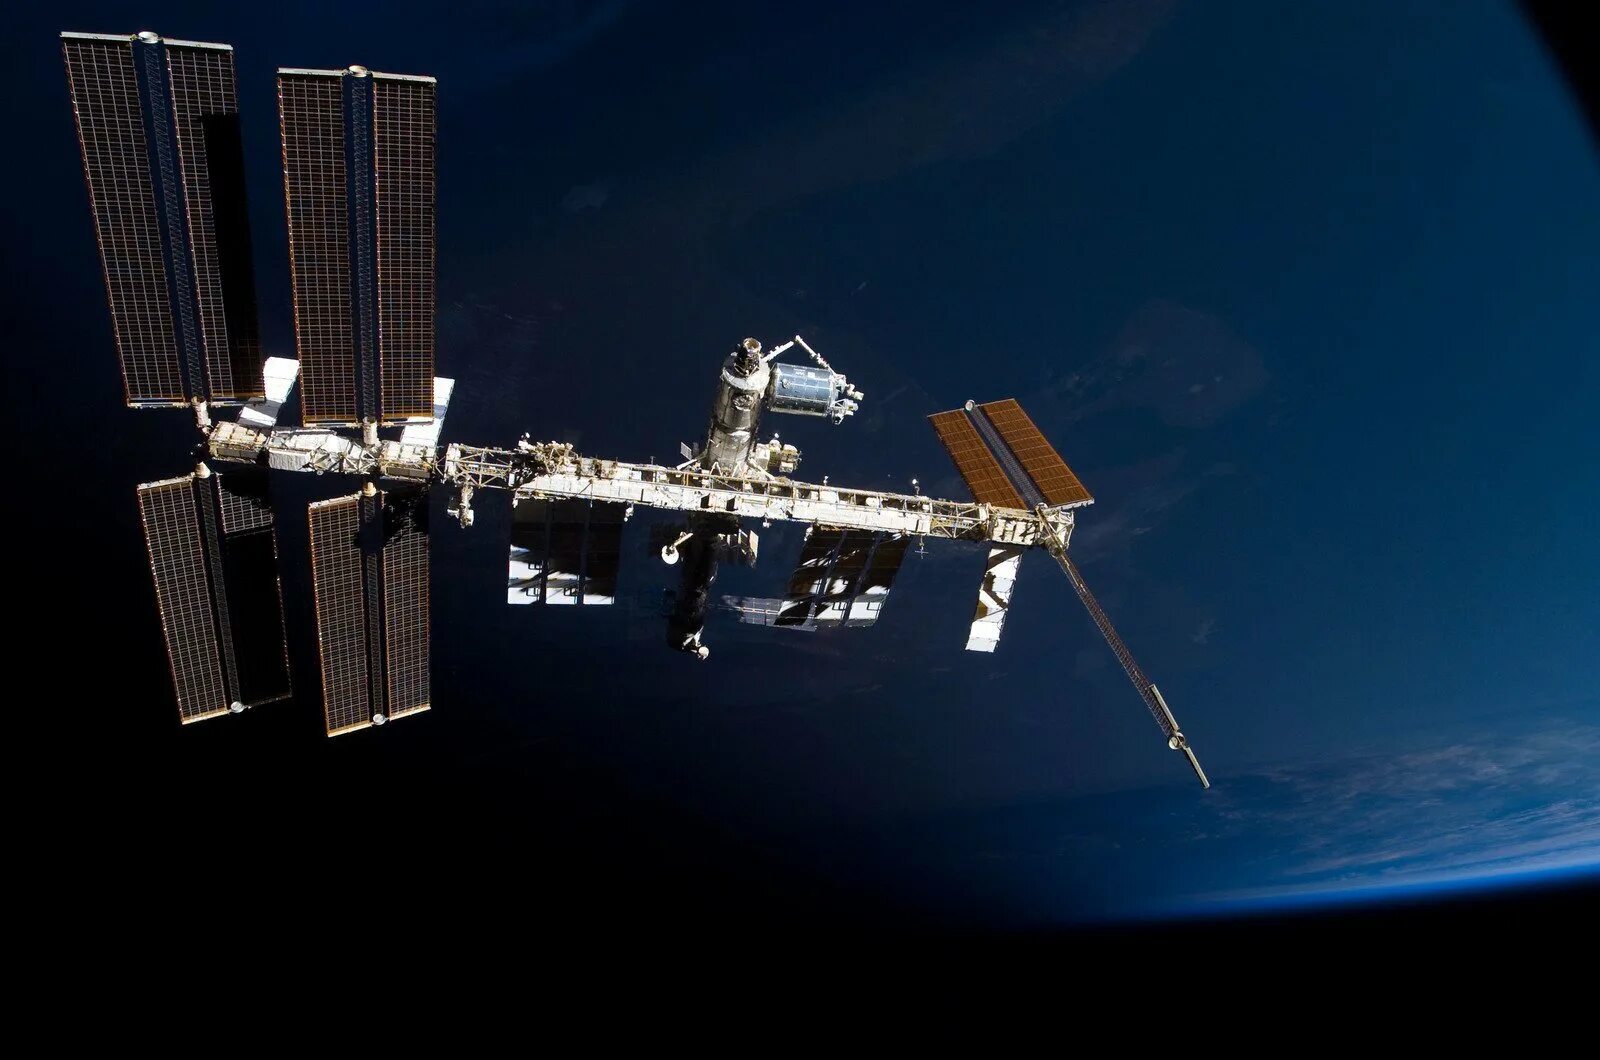 Международная космическая станция в каком году. Космическая станция МКС. Спутник НАСА станция МКС. Космическая орбитальная станция мир. Атлантис космический аппарат.